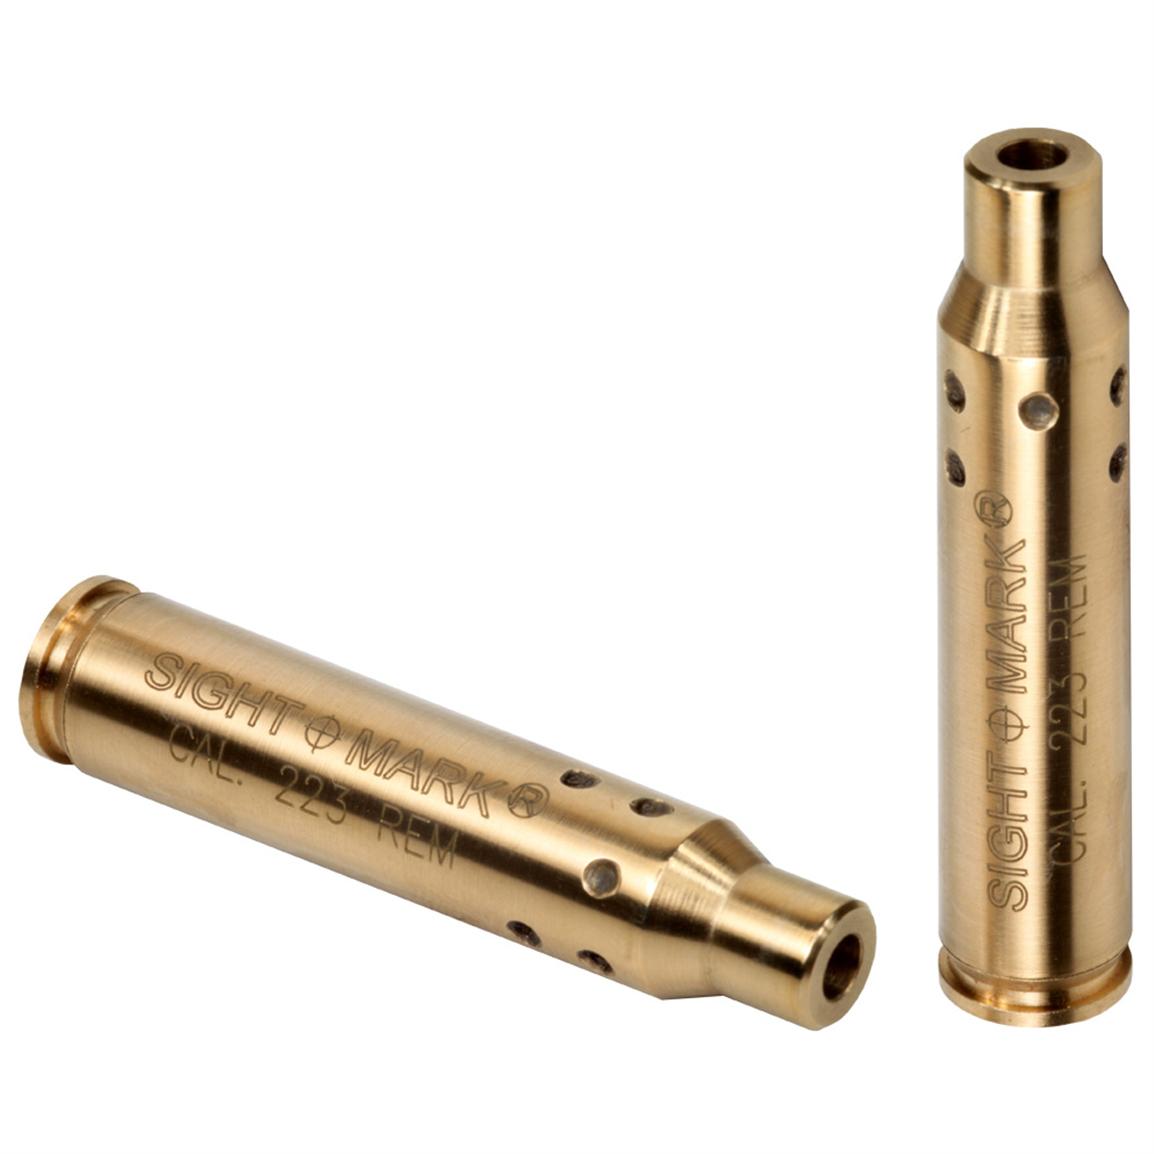 Sightmark .223 Remington Premium Laser Boresight